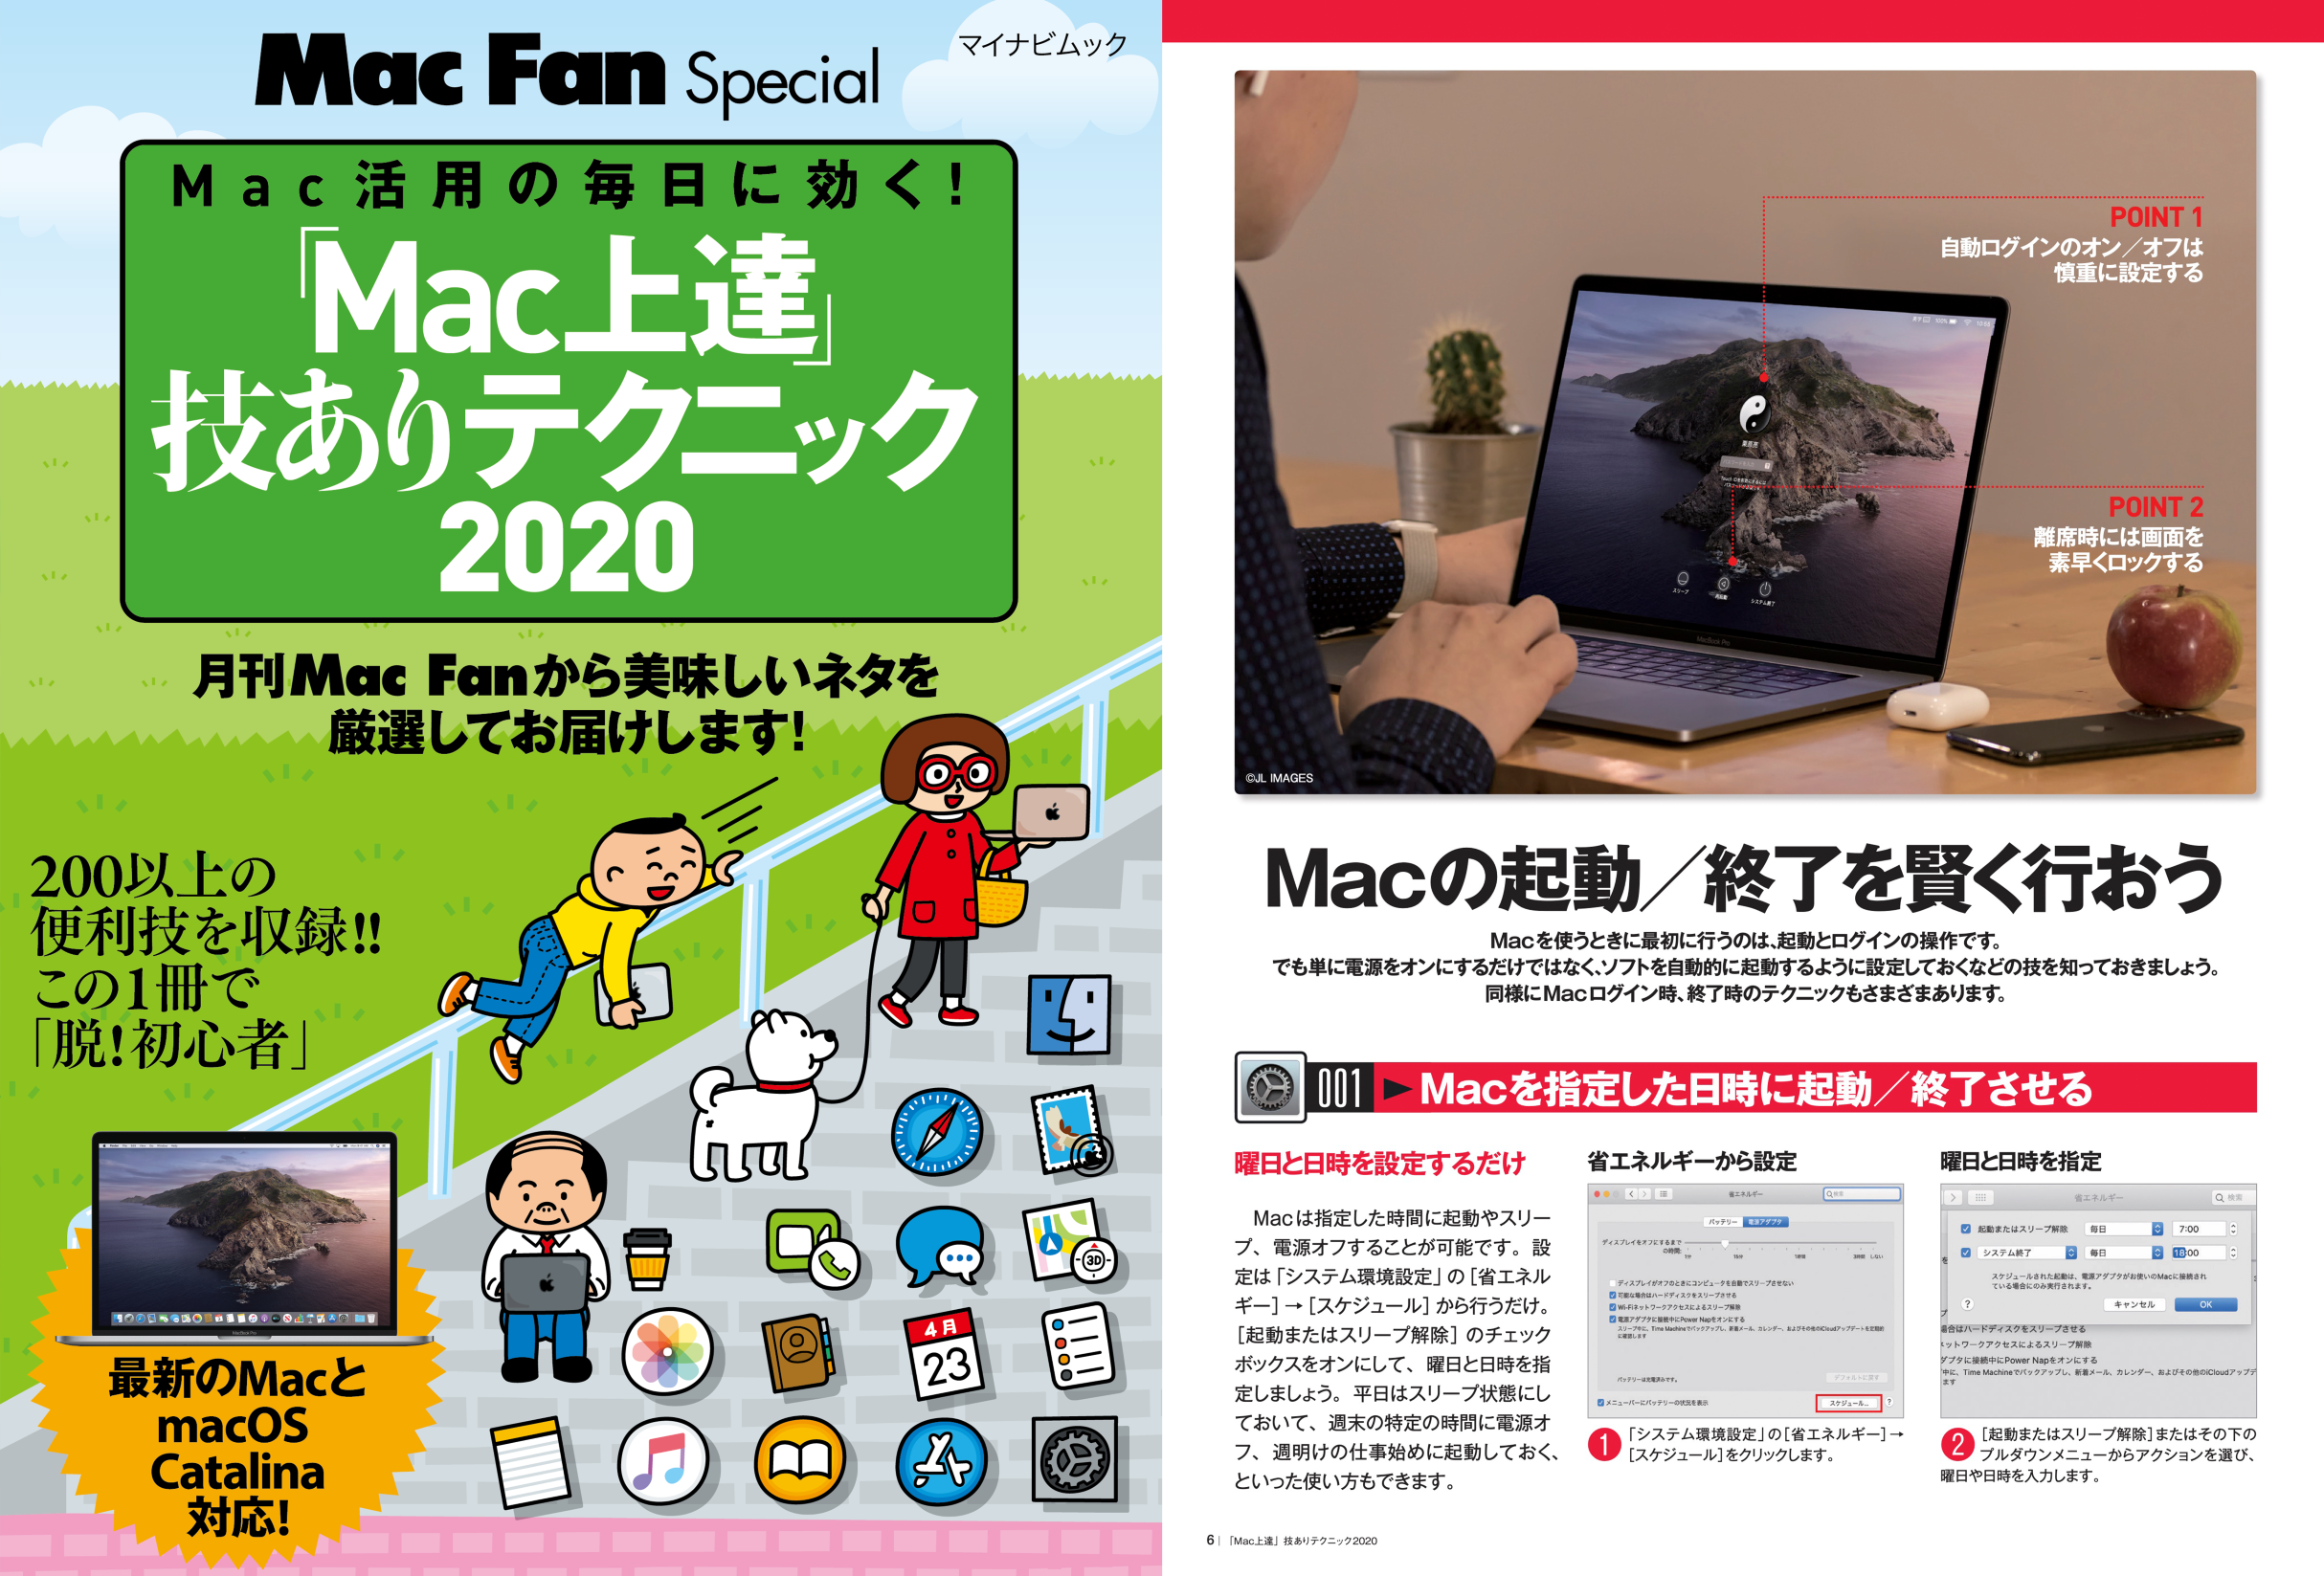 Mac Fan Special 「Mac上達」技ありテクニック2020